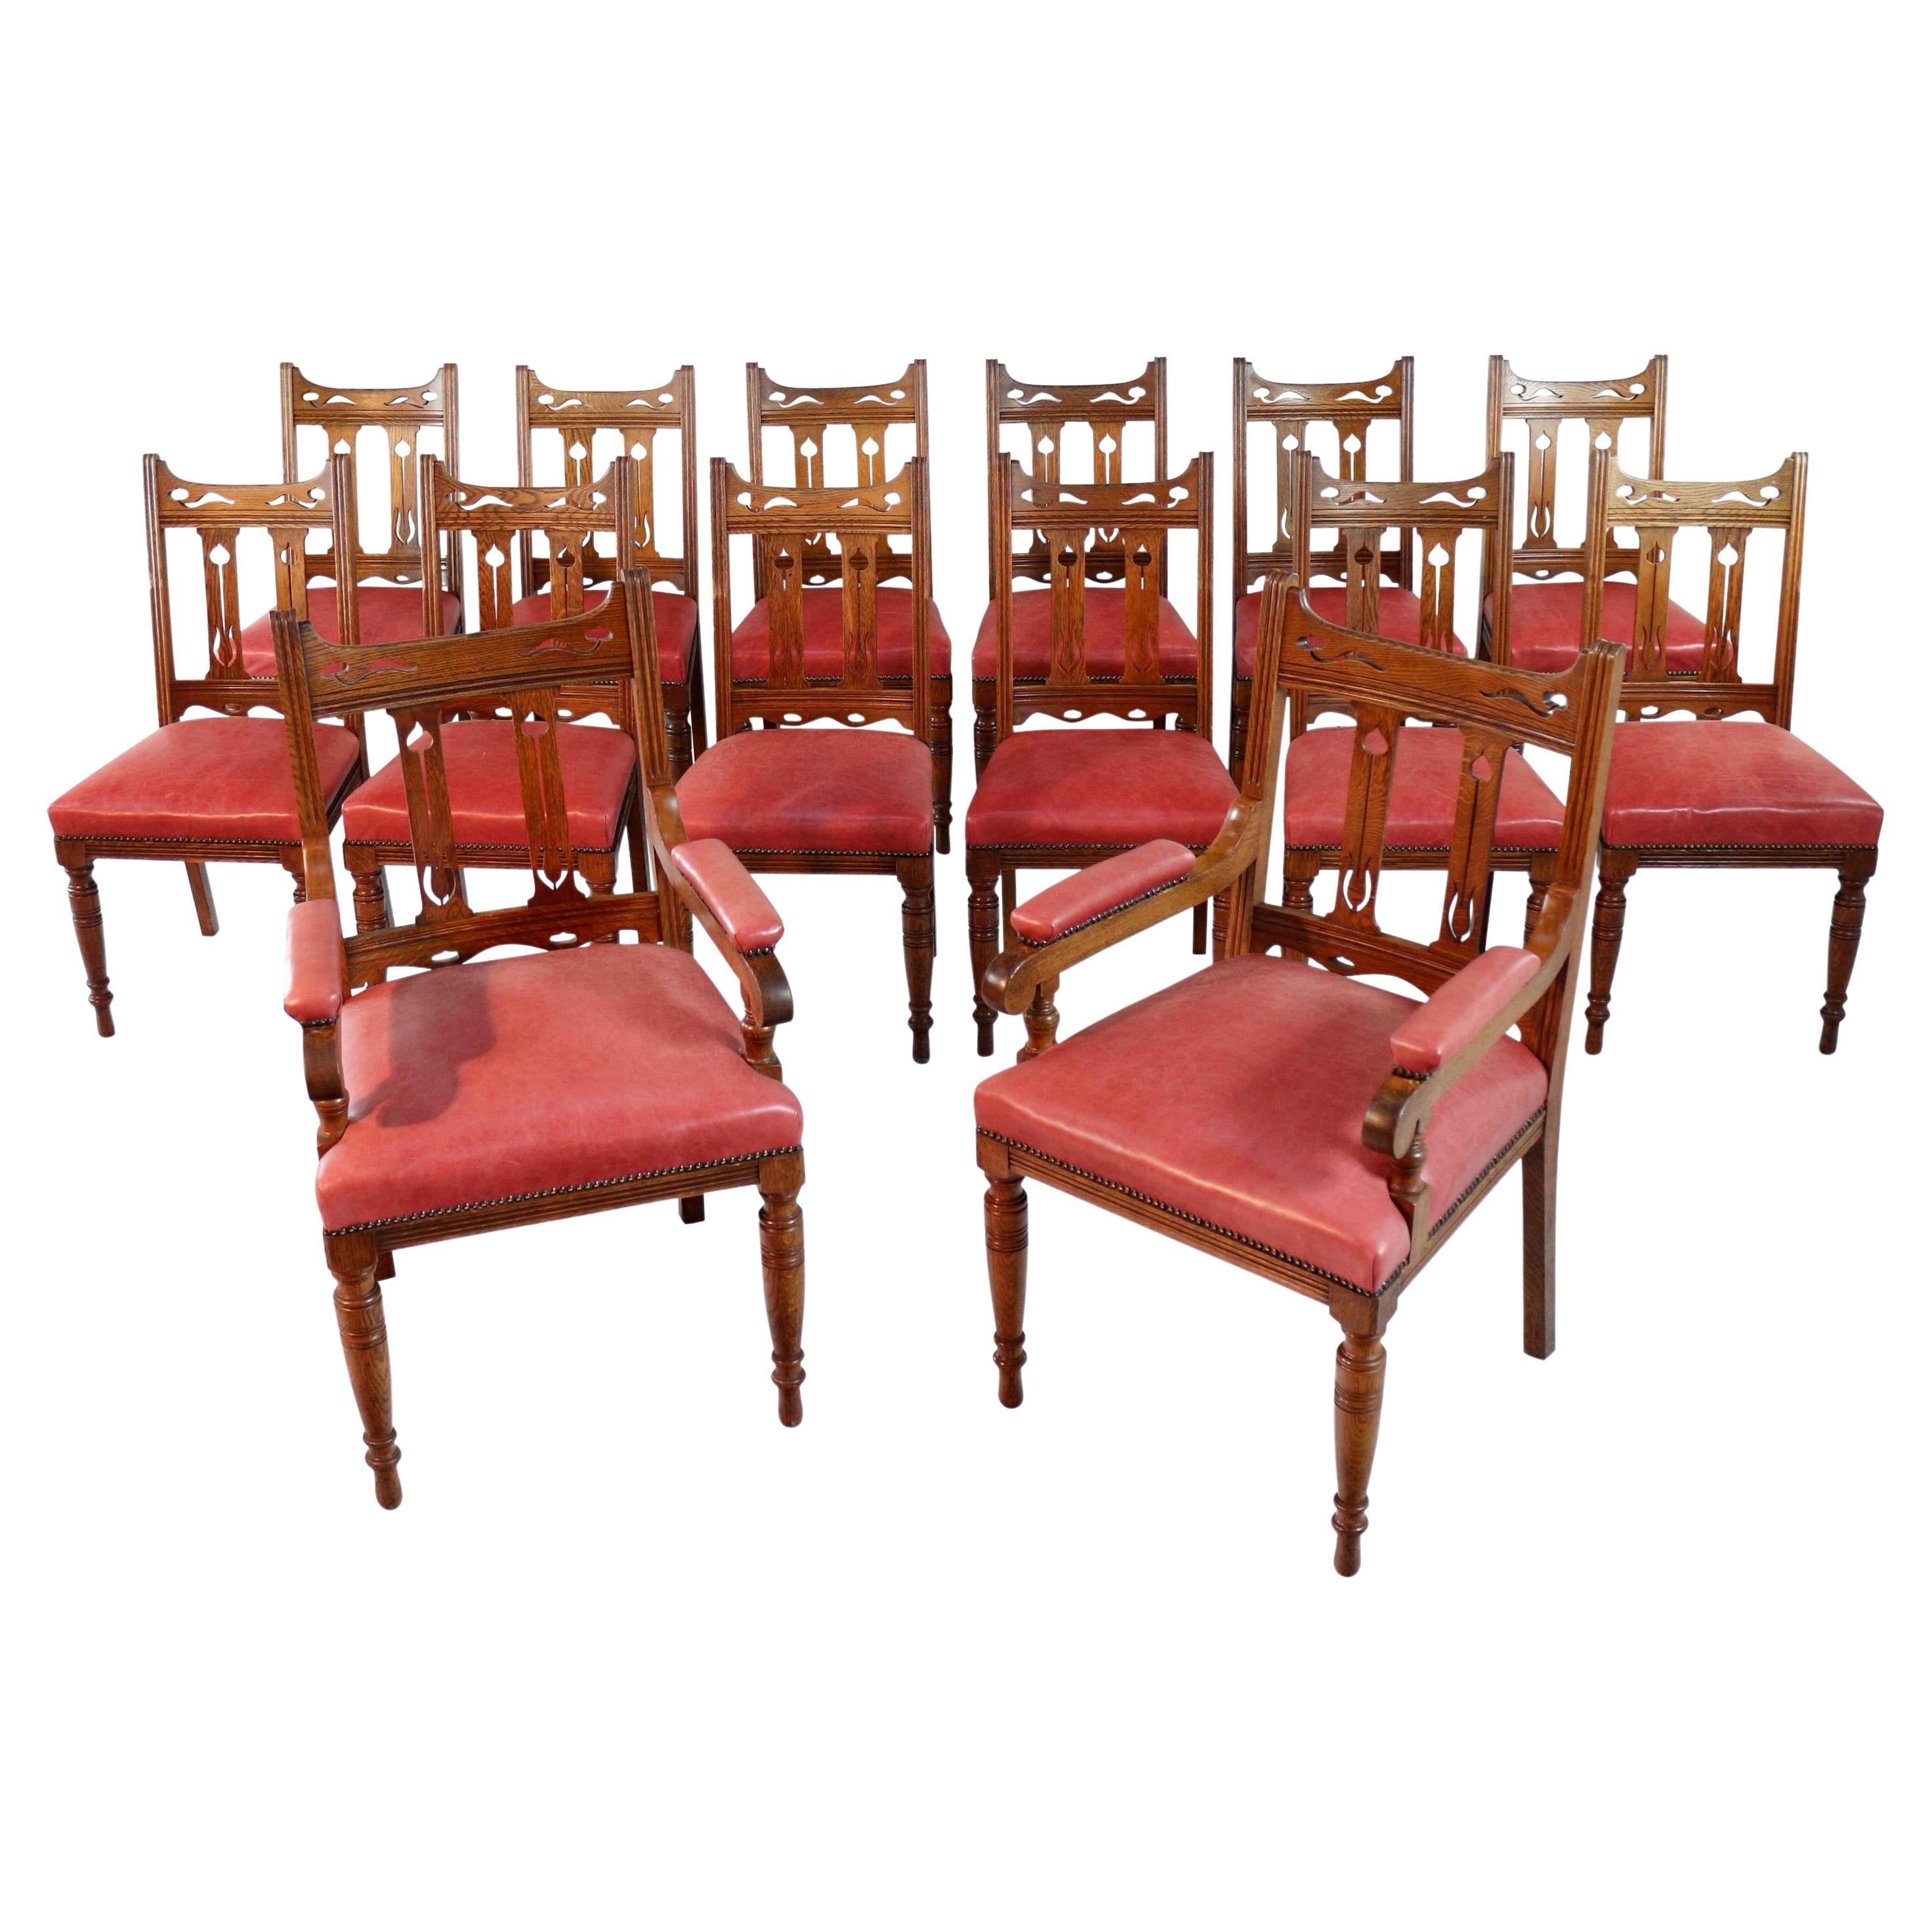 Satz von 14 antiken englischen viktorianischen Arts & Crafts-Esszimmerstühlen aus Eiche und Leder